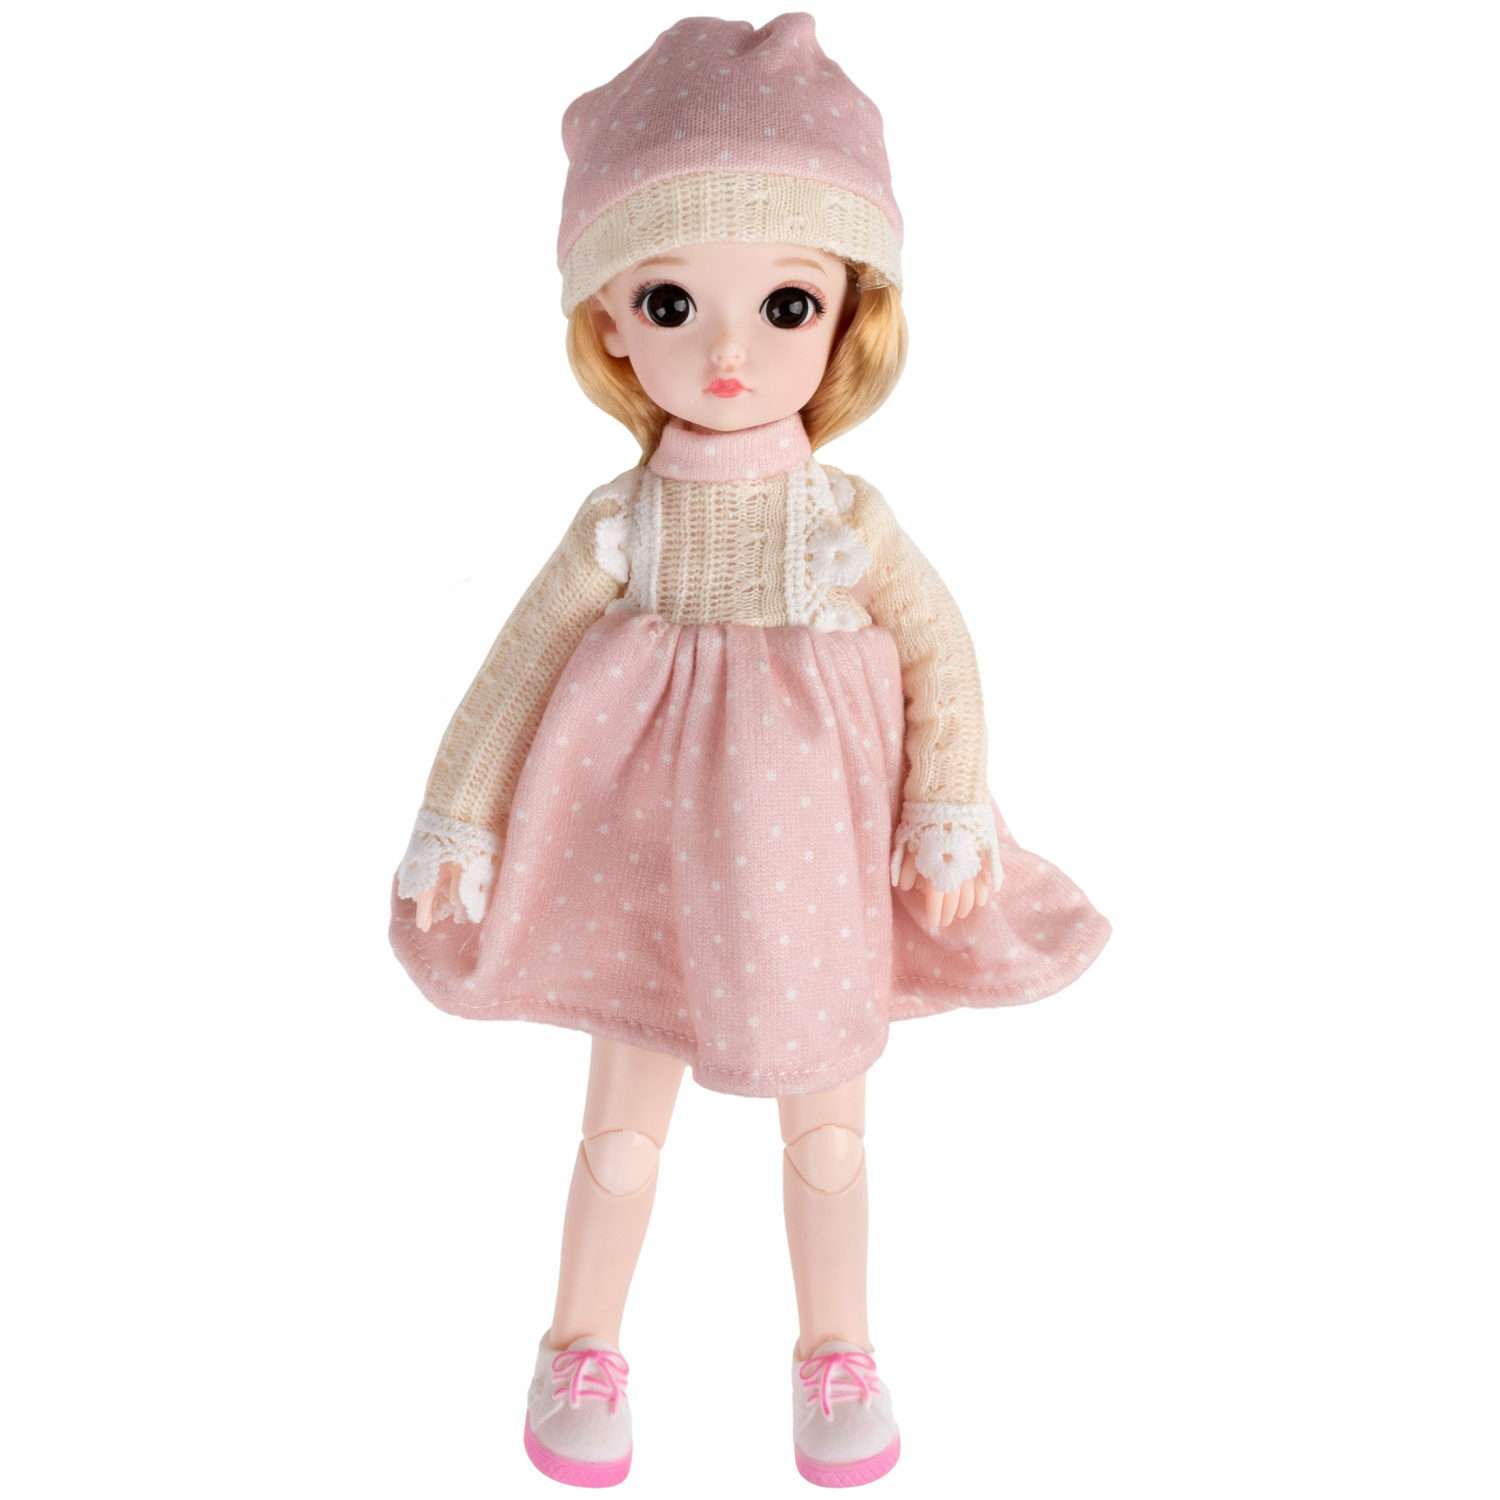 Кукла шарнирная 30 см 1TOY Alisa Kawaii с длинными волосами блондинка БЖД bjd аниме экшн фигурка игрушки для девочек Т24345 - фото 1